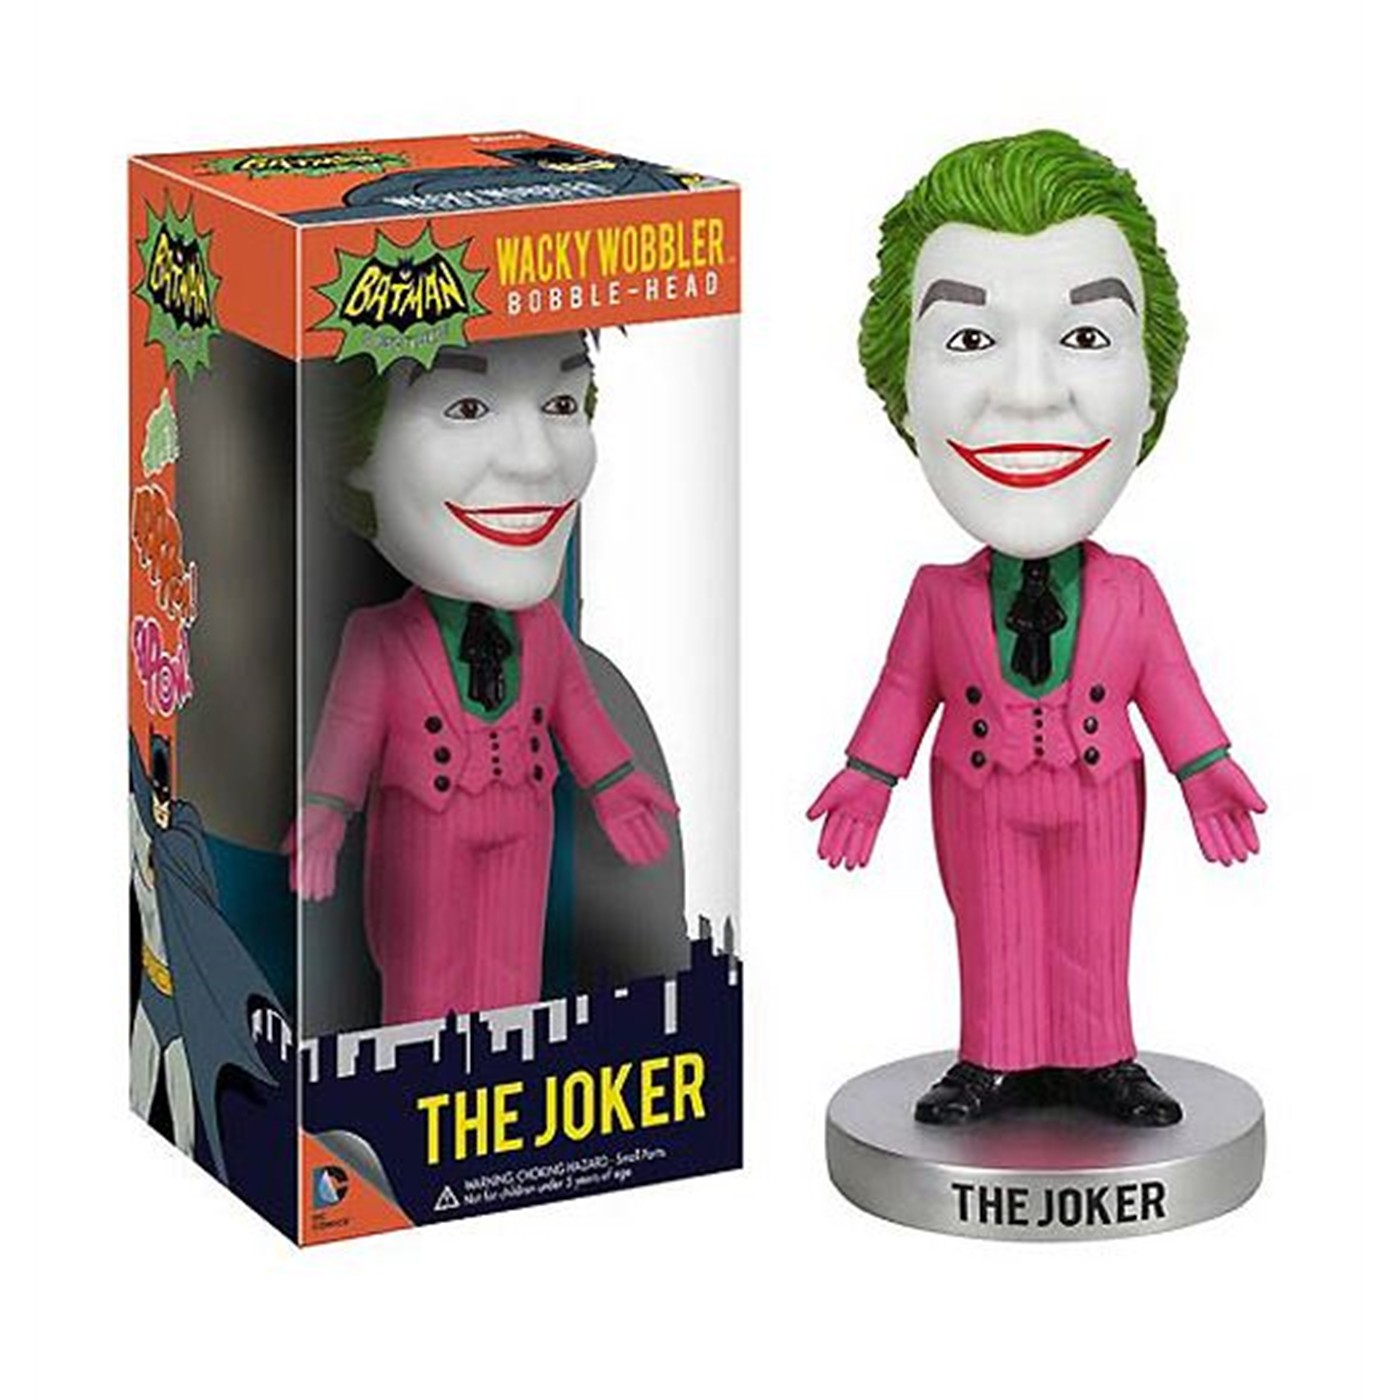 Joker Batman 1966 Wacky Wobbler Bobblehead